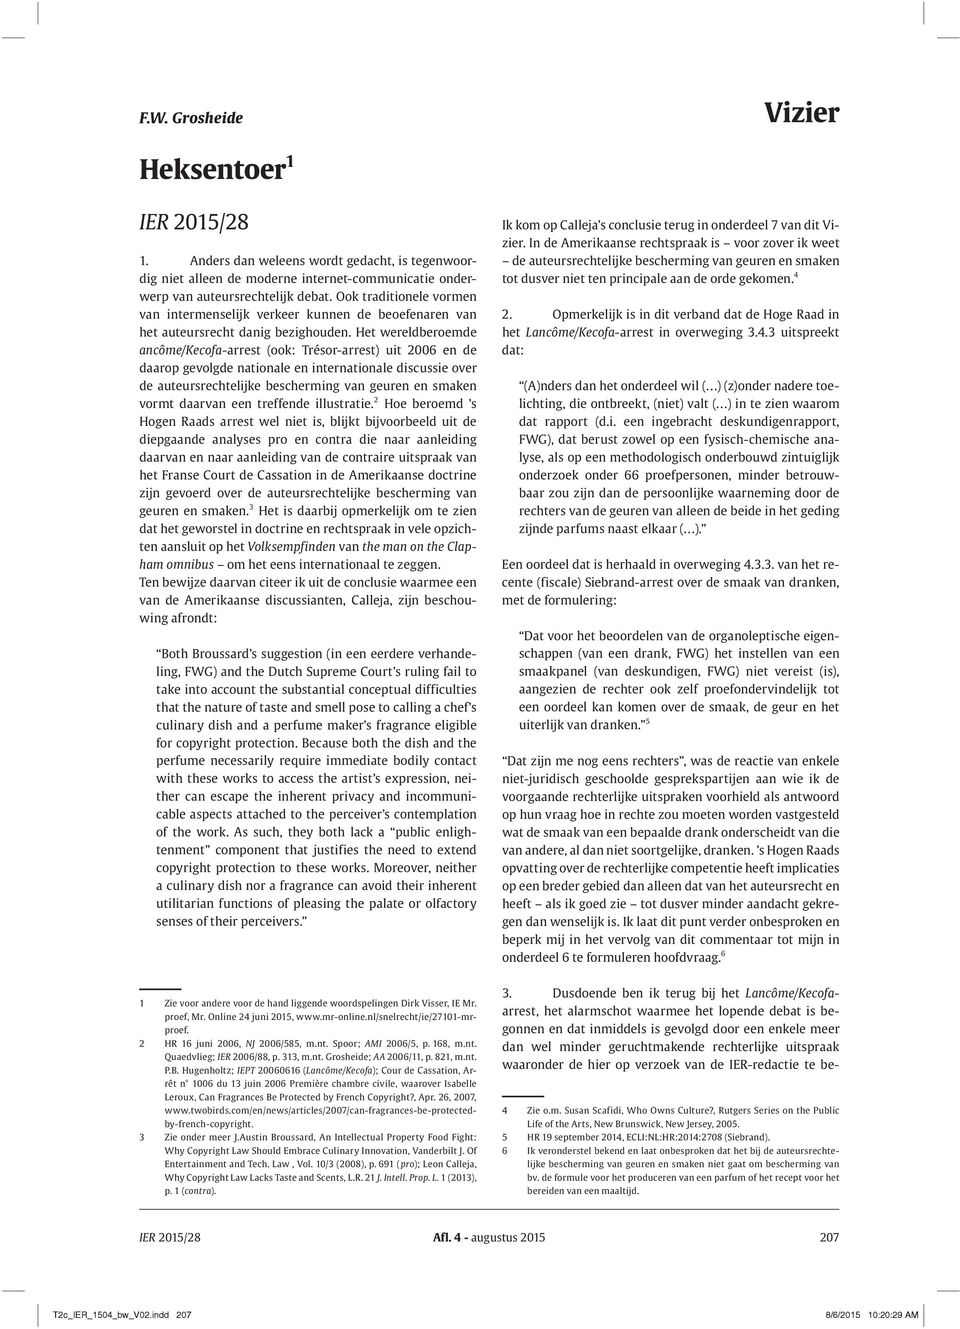 Het wereldberoemde ancôme/kecofa -arrest (ook: Trésor-arrest) uit 2006 en de daarop gevolgde nationale en internationale discussie over de auteursrechtelijke bescherming van geuren en smaken vormt